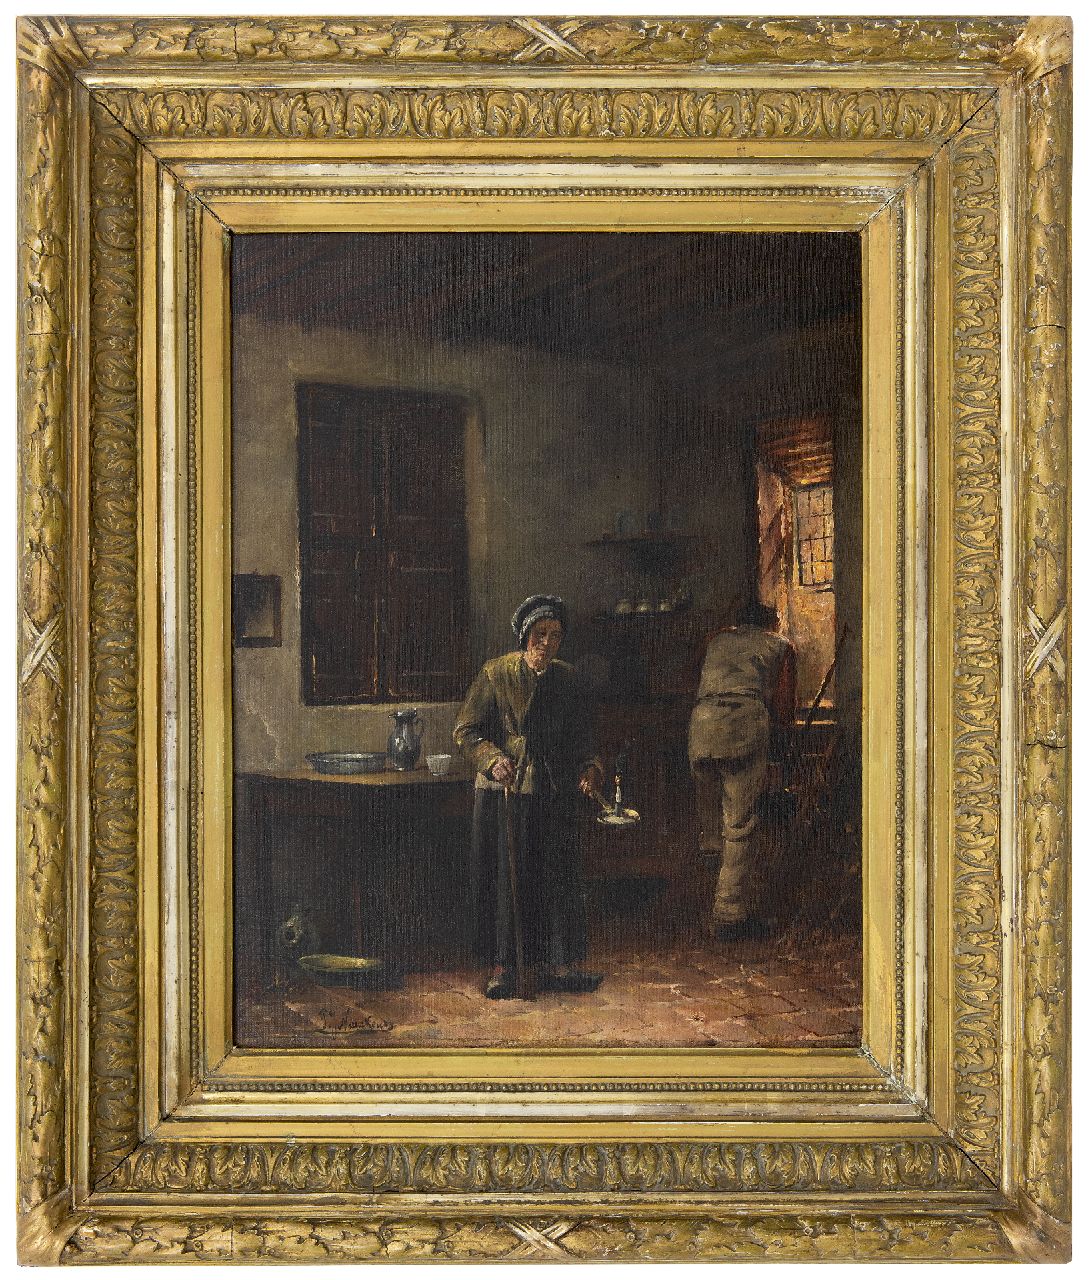 Neuckens P.J.  | Pierre Jules Neuckens | Schilderijen te koop aangeboden | Boereninterieur, olieverf op doek 48,5 x 39,3 cm, gesigneerd linksonder